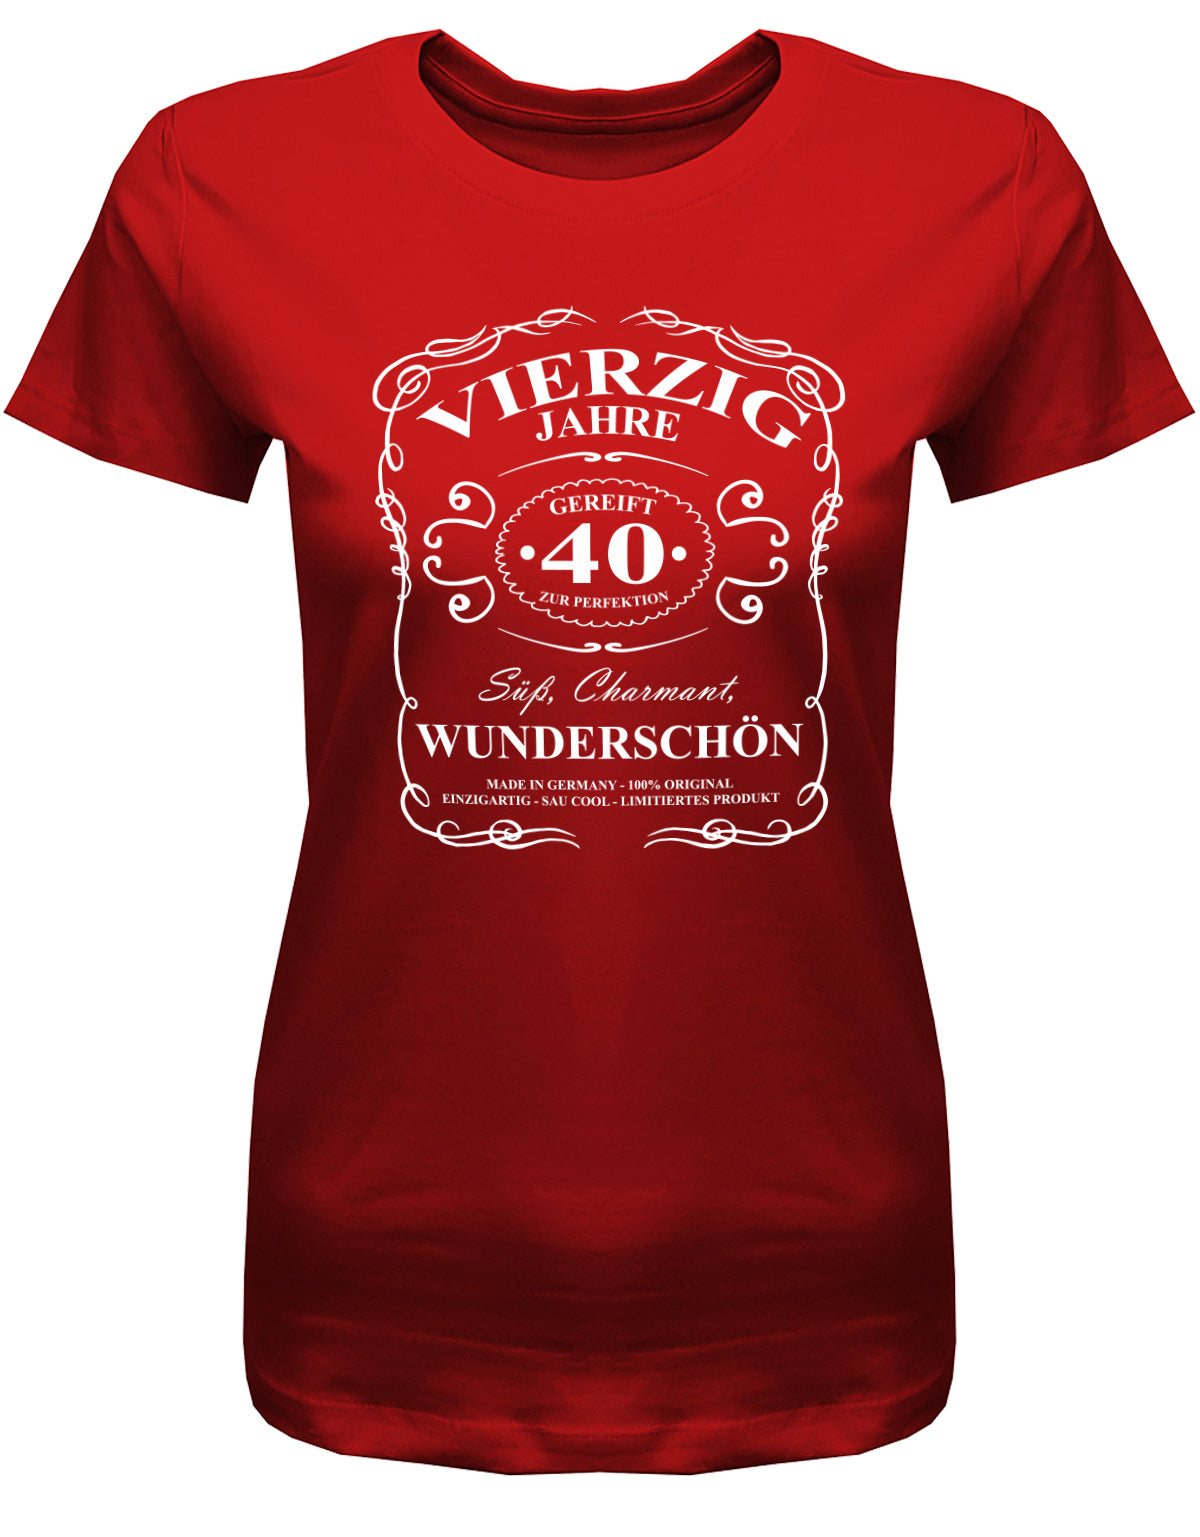 Lustiges T-Shirt zum 40. Geburtstag für die Frau Bedruckt mit: Vierzig Jahre zur Perfektion gereift 40 süß, charmant, wunderschön. Das T Shirt 40 Geburtstag Frau Lustig ist eine super Geschenkidee für alle 40 Jährigen. Geschenk zum 40 geburtstag Frau ✓ 1983 geburtstag Frau ✓ 40 Geburtstag tshirt ✓ shirt geburtstag 40 Rot